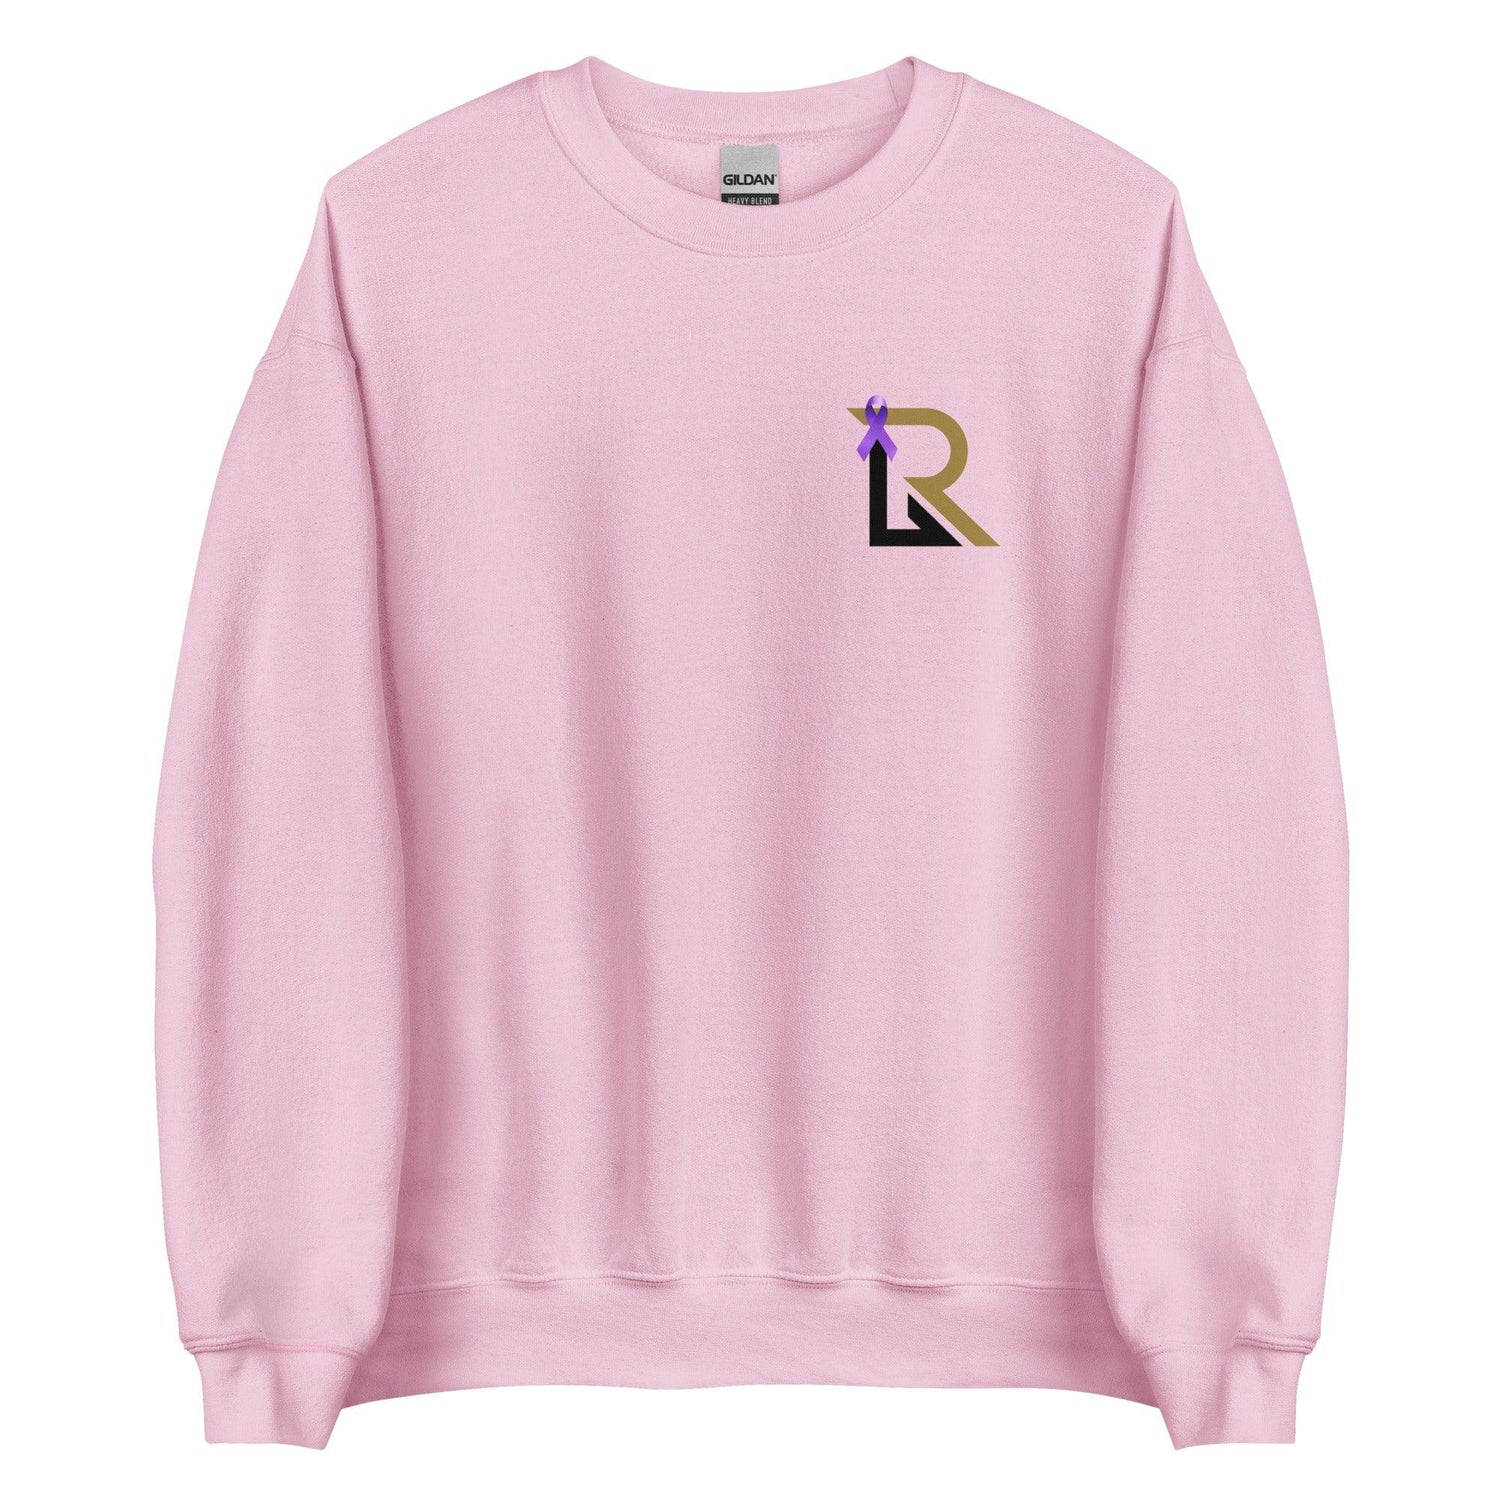 Rhett Lowder “RL” Sweatshirt - Fan Arch